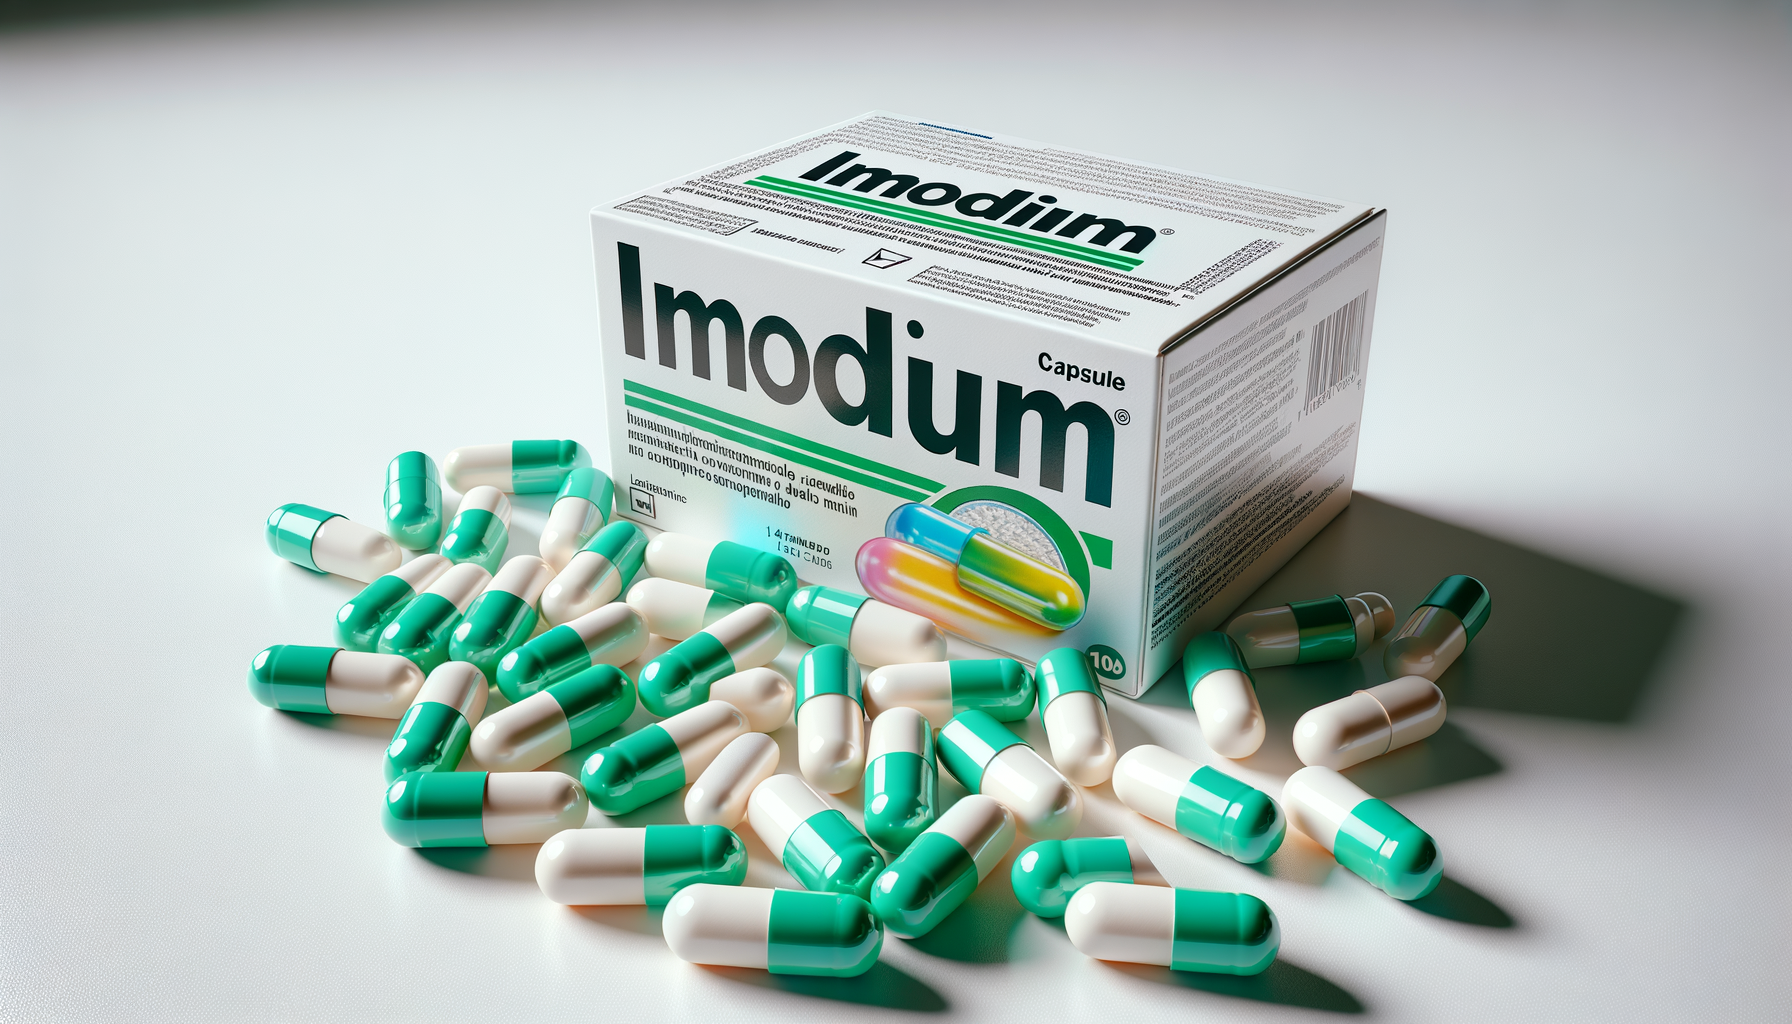 Che differenza c’è tra Dissenten e Imodium?